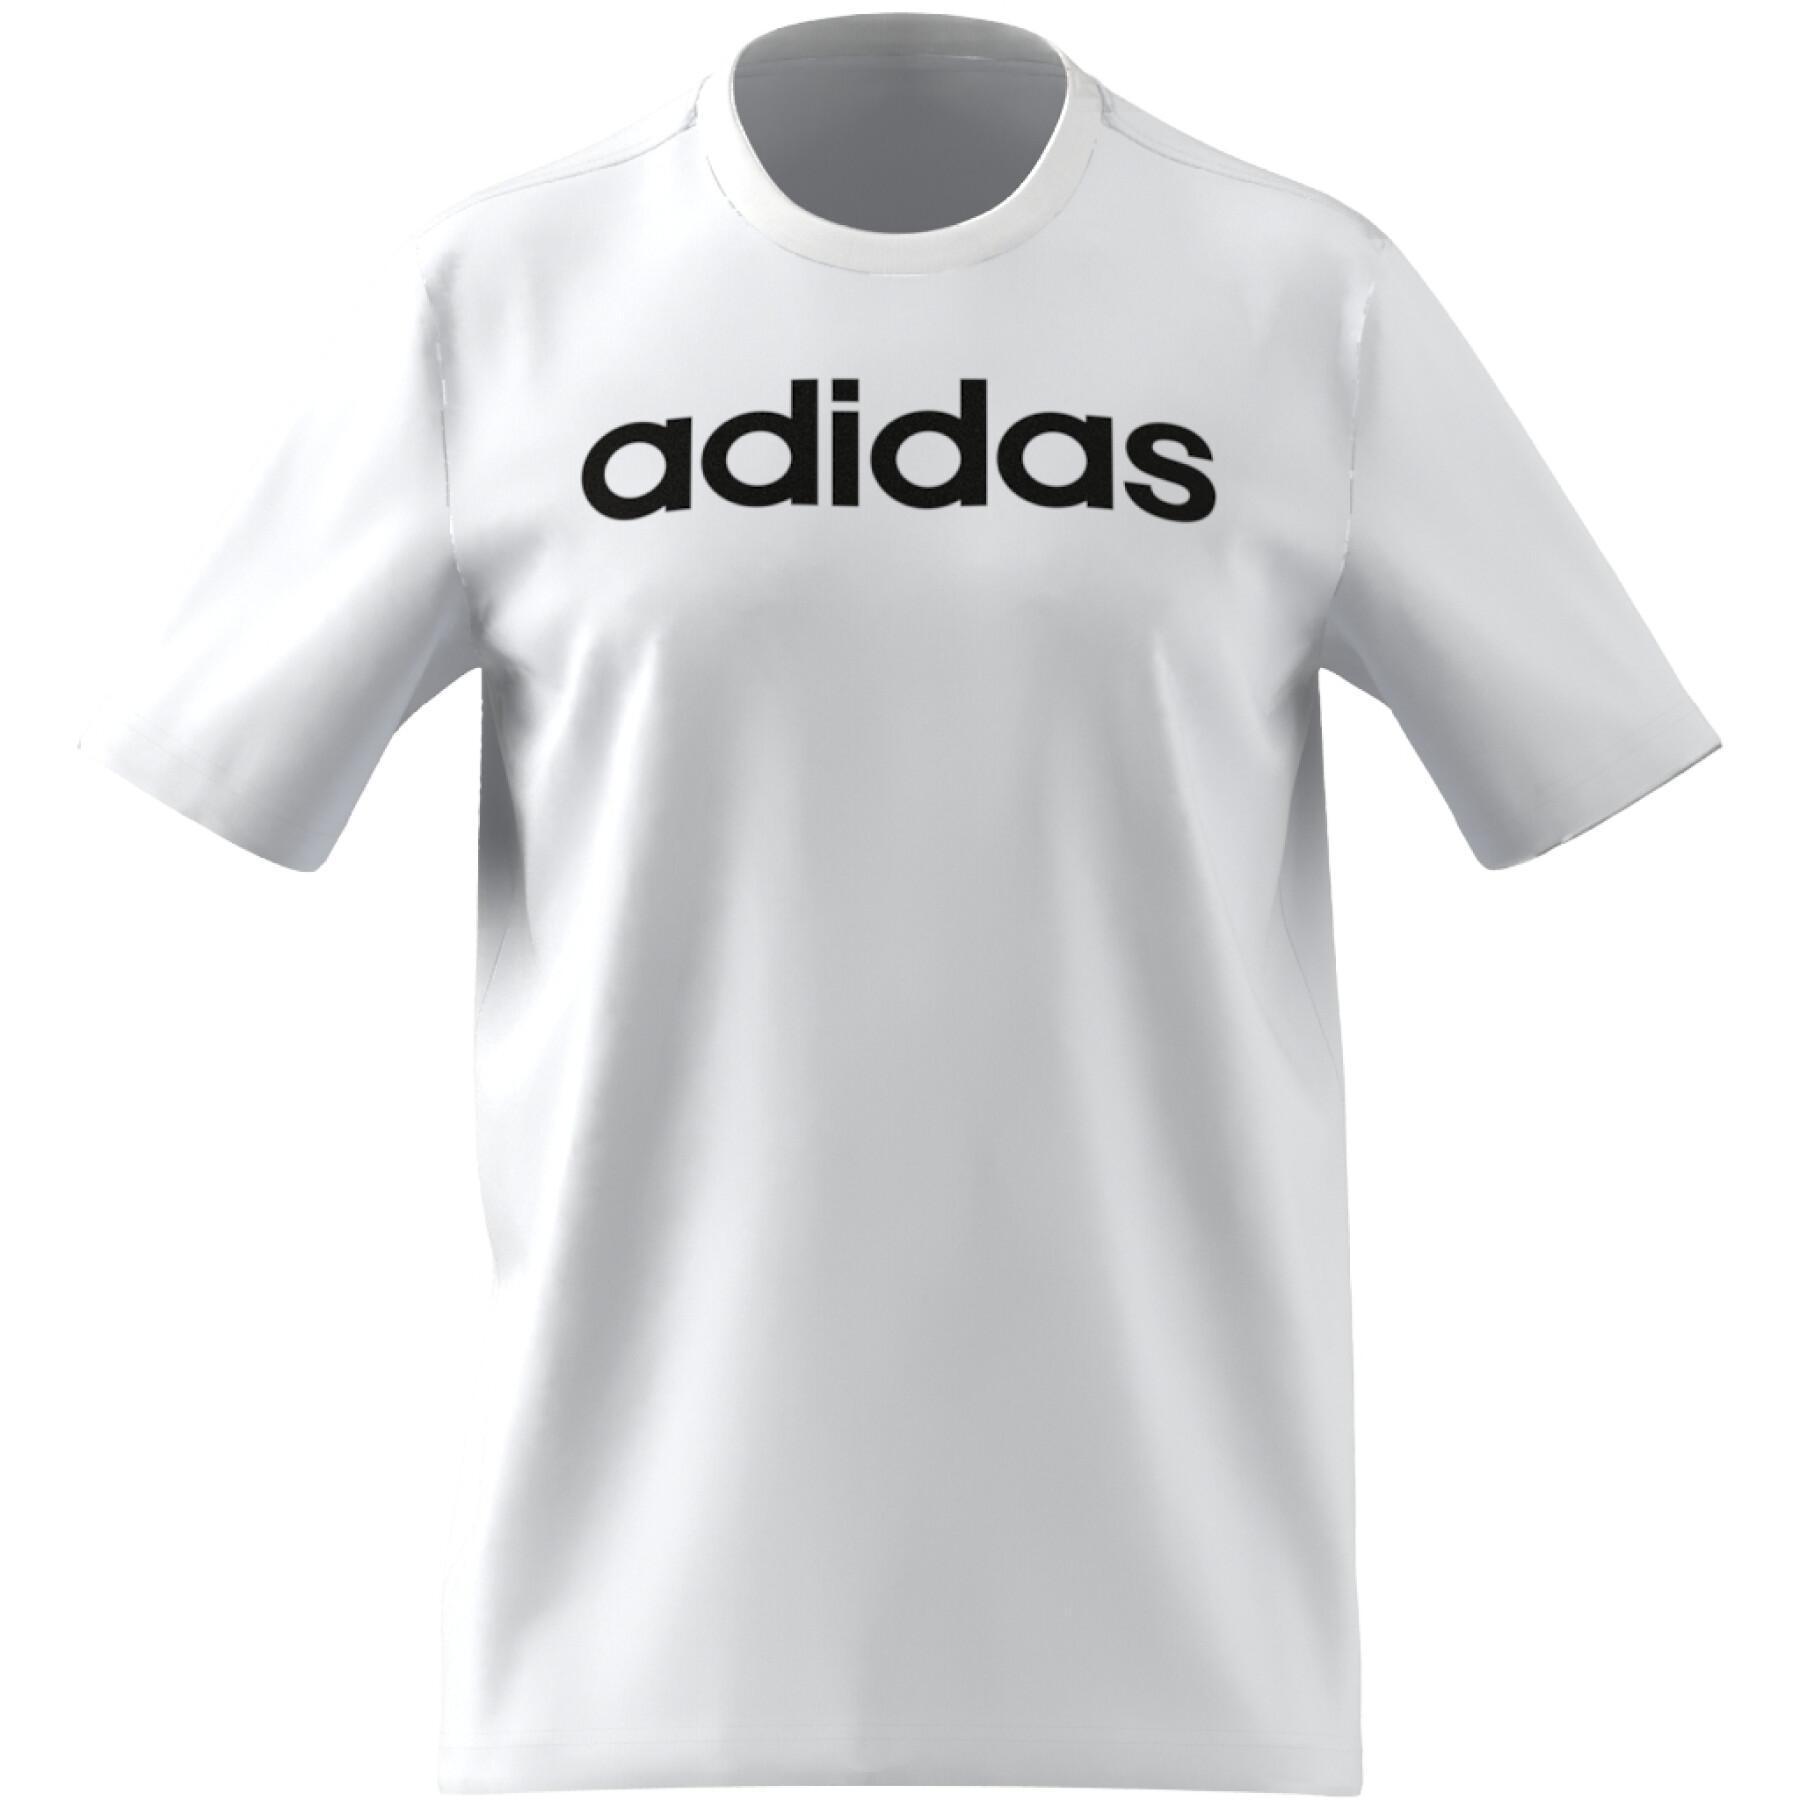 Camiseta con logotipo bordado lineal jersey sencillo adidas Essentials